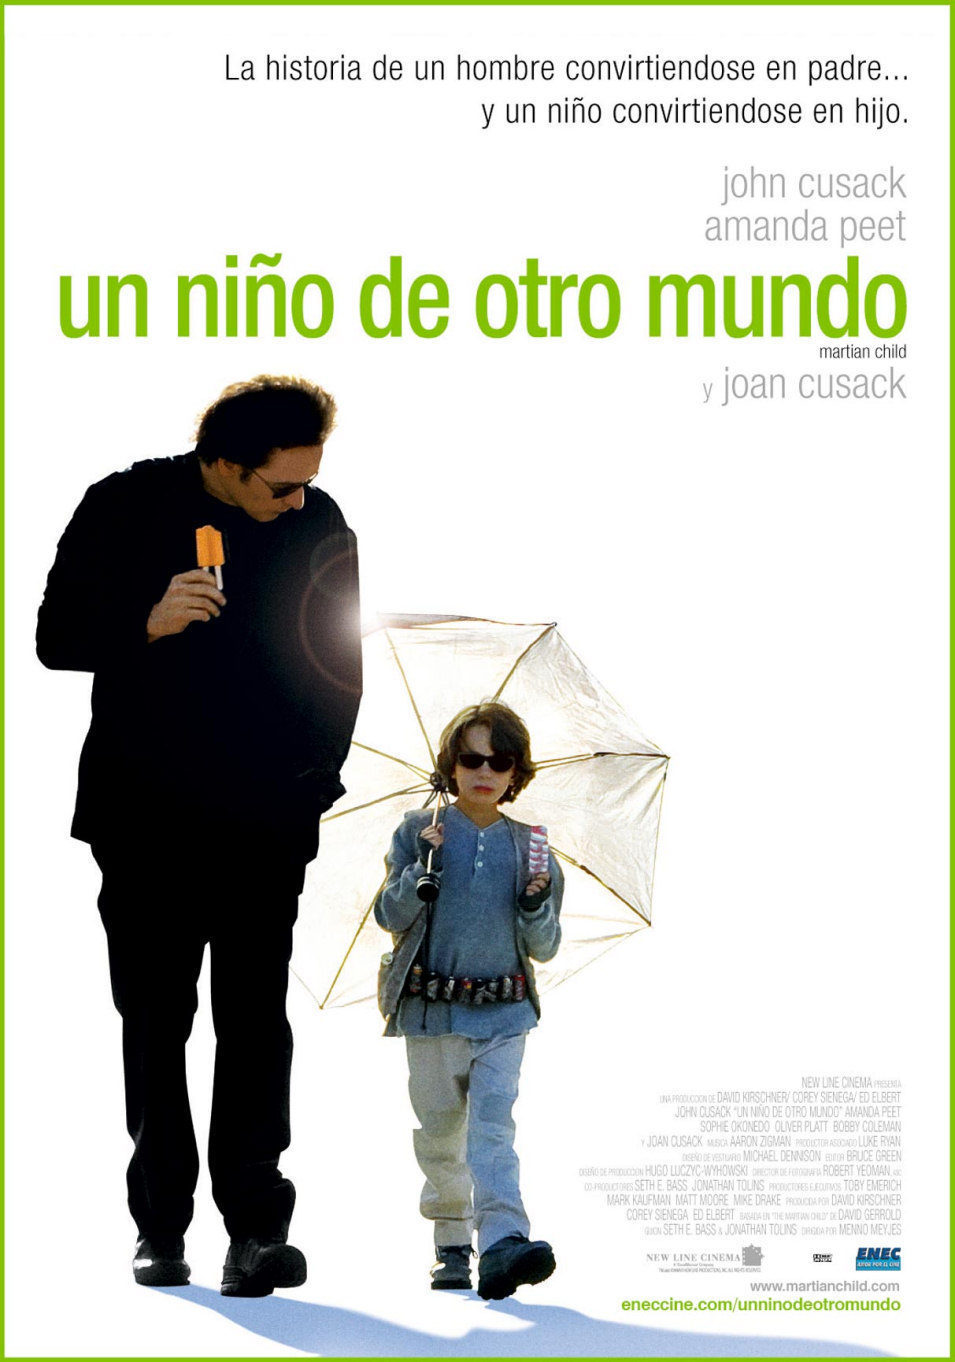 Poster of Martian Child - América Latina